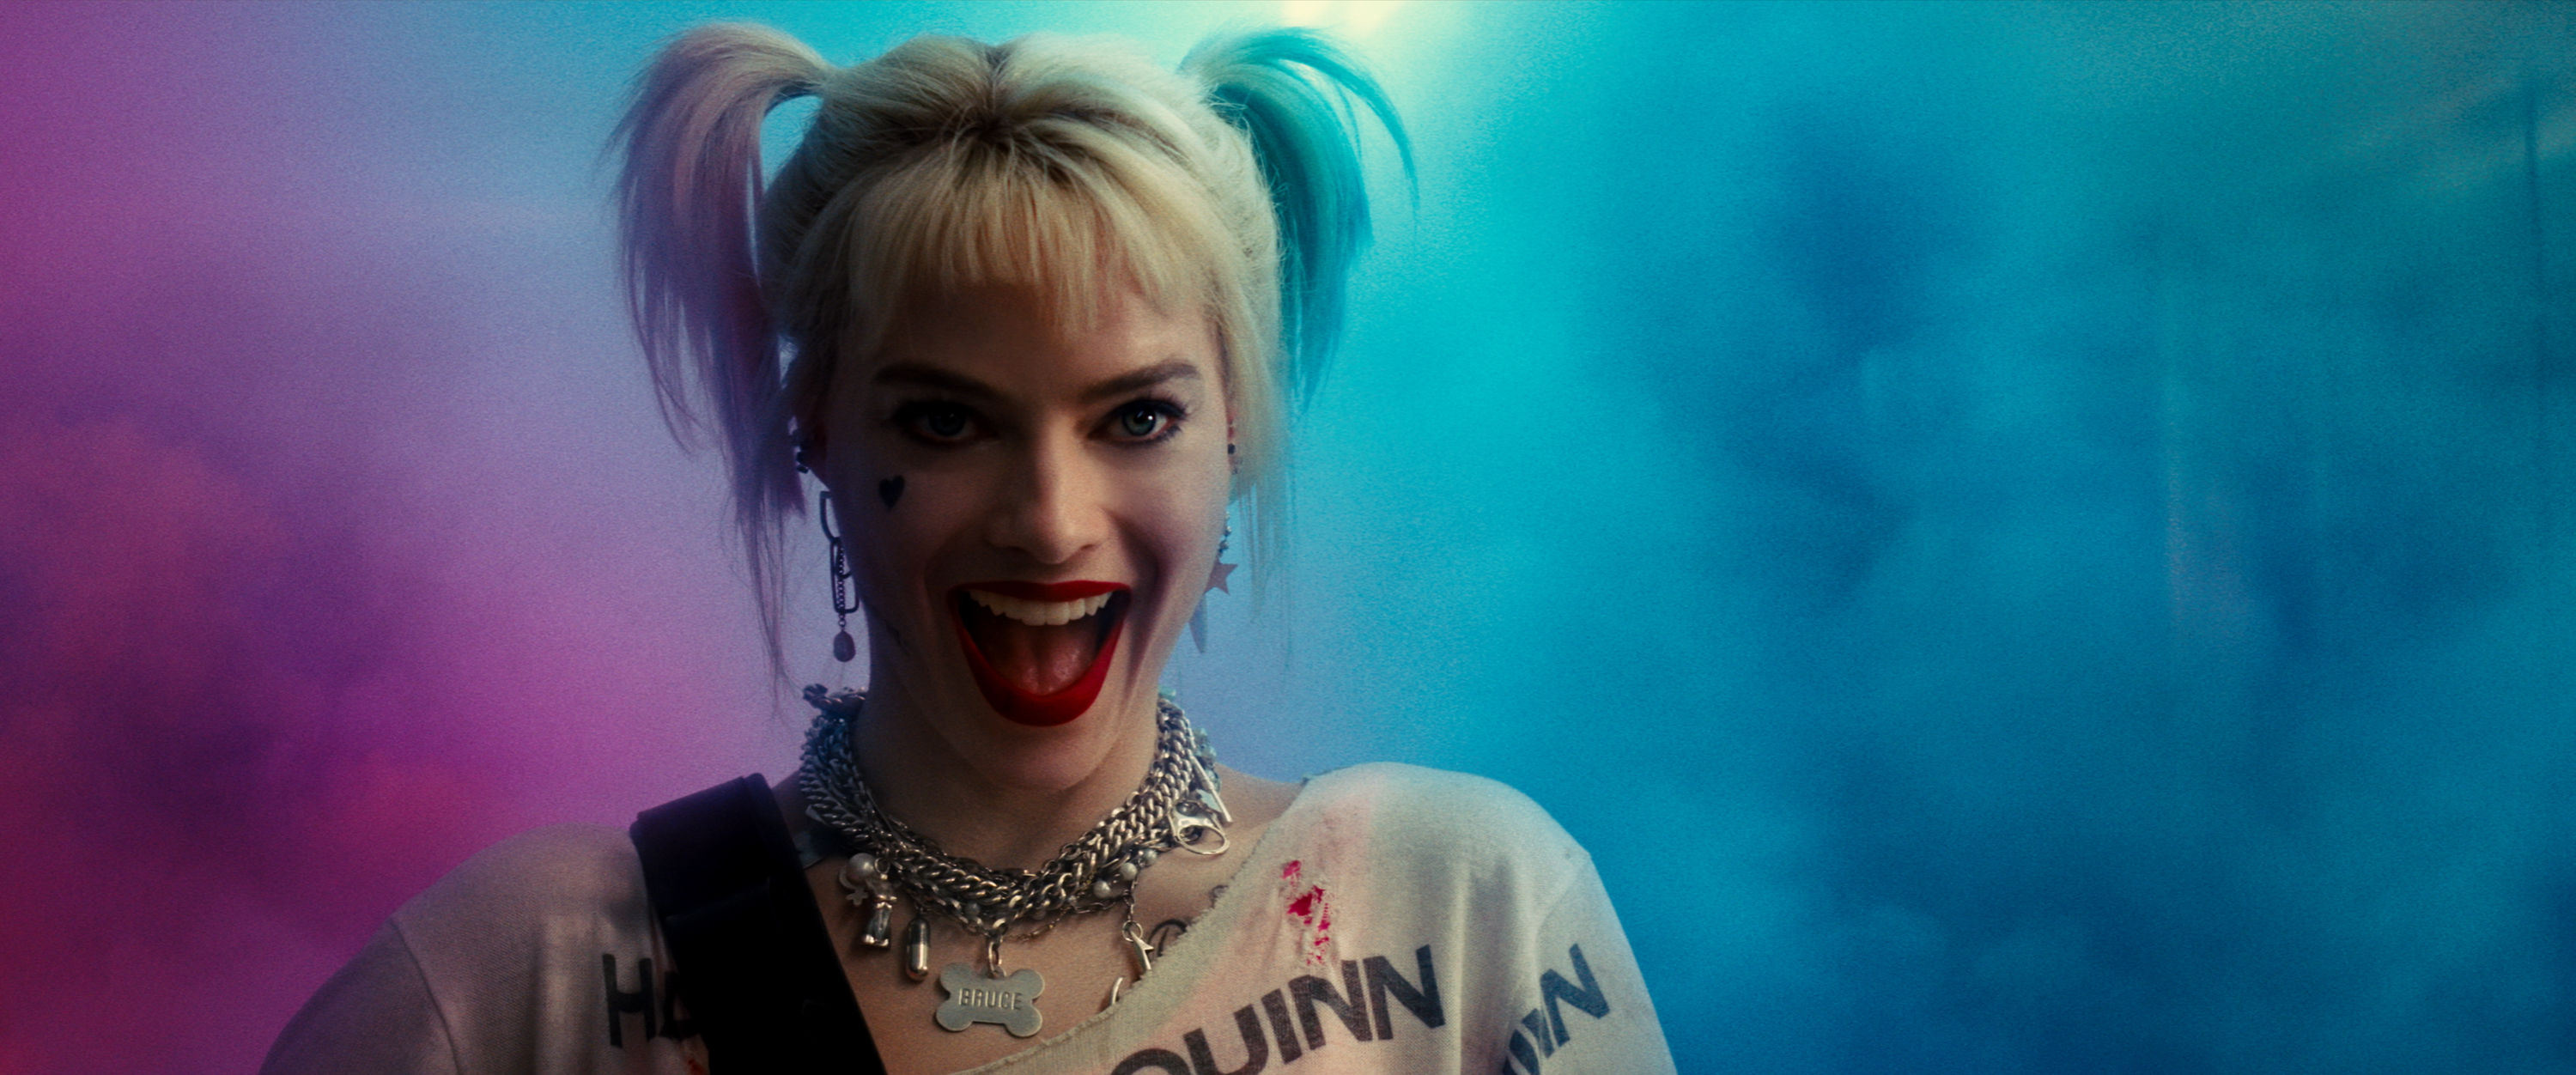 Margot Robbie As Harley Quinn Bop Wallpapers